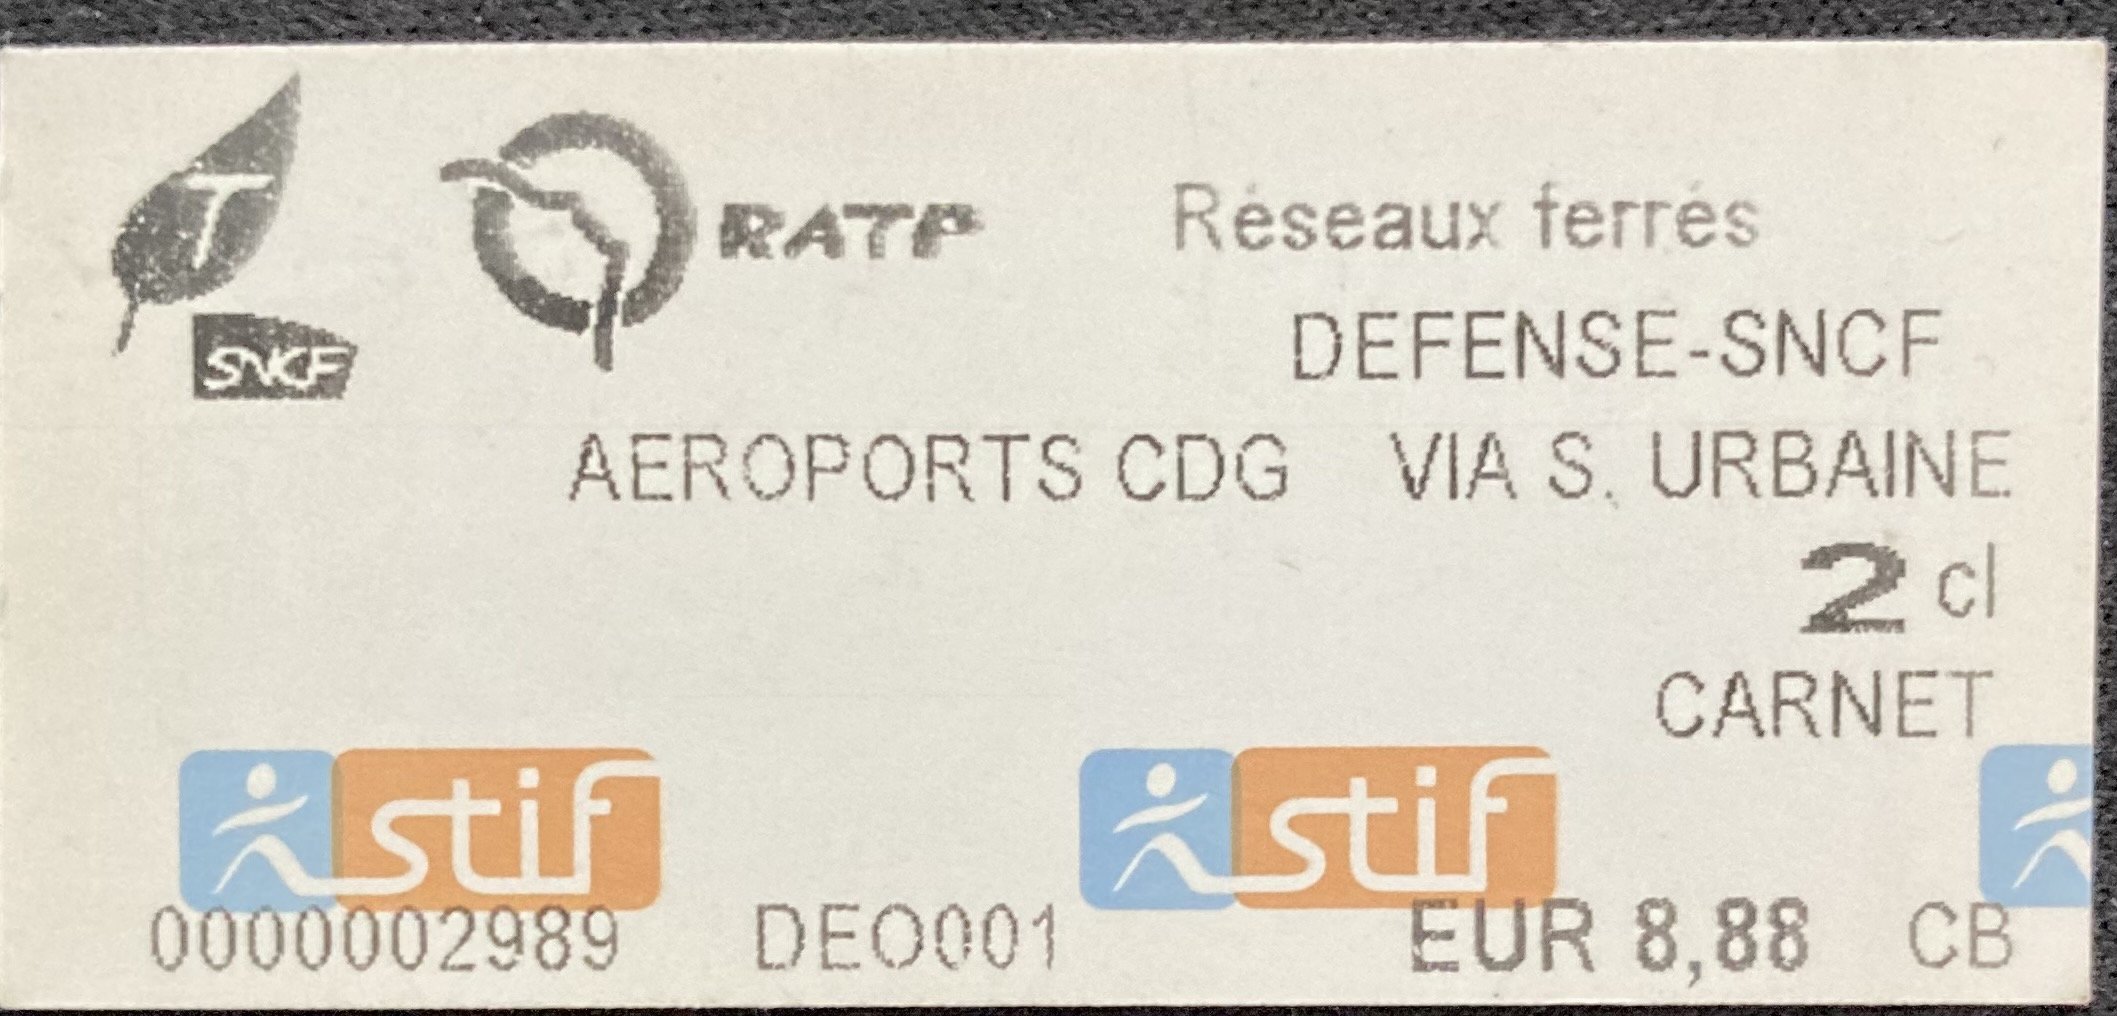 CDG to La Defense Paris Ile de France Transilien train ticket